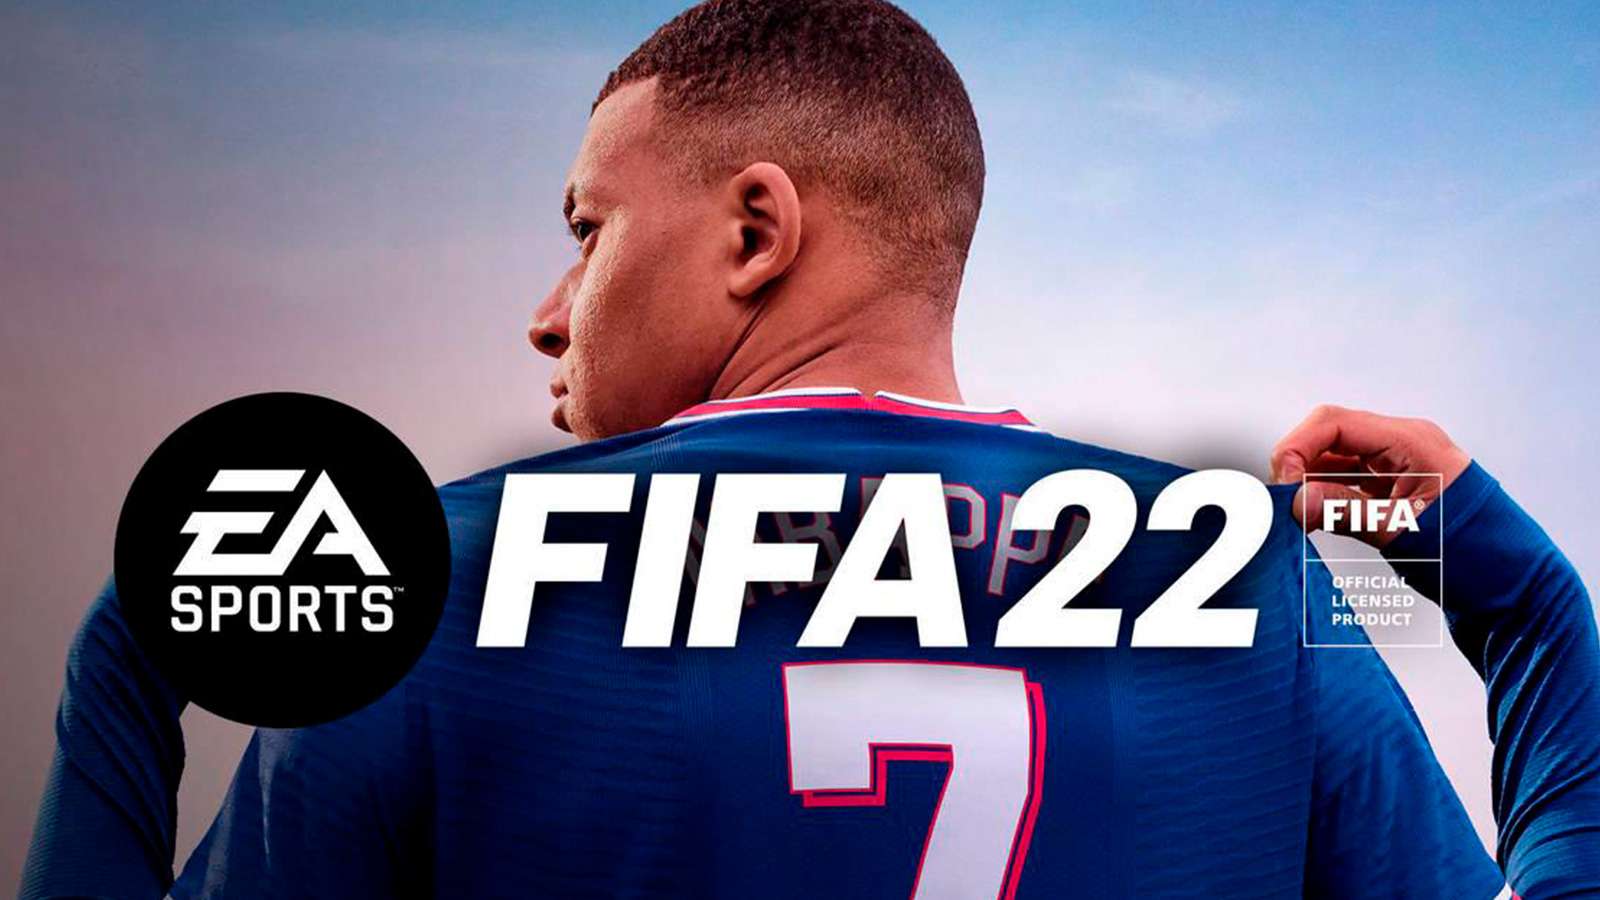 Mbappe en la portada de FIFA 22